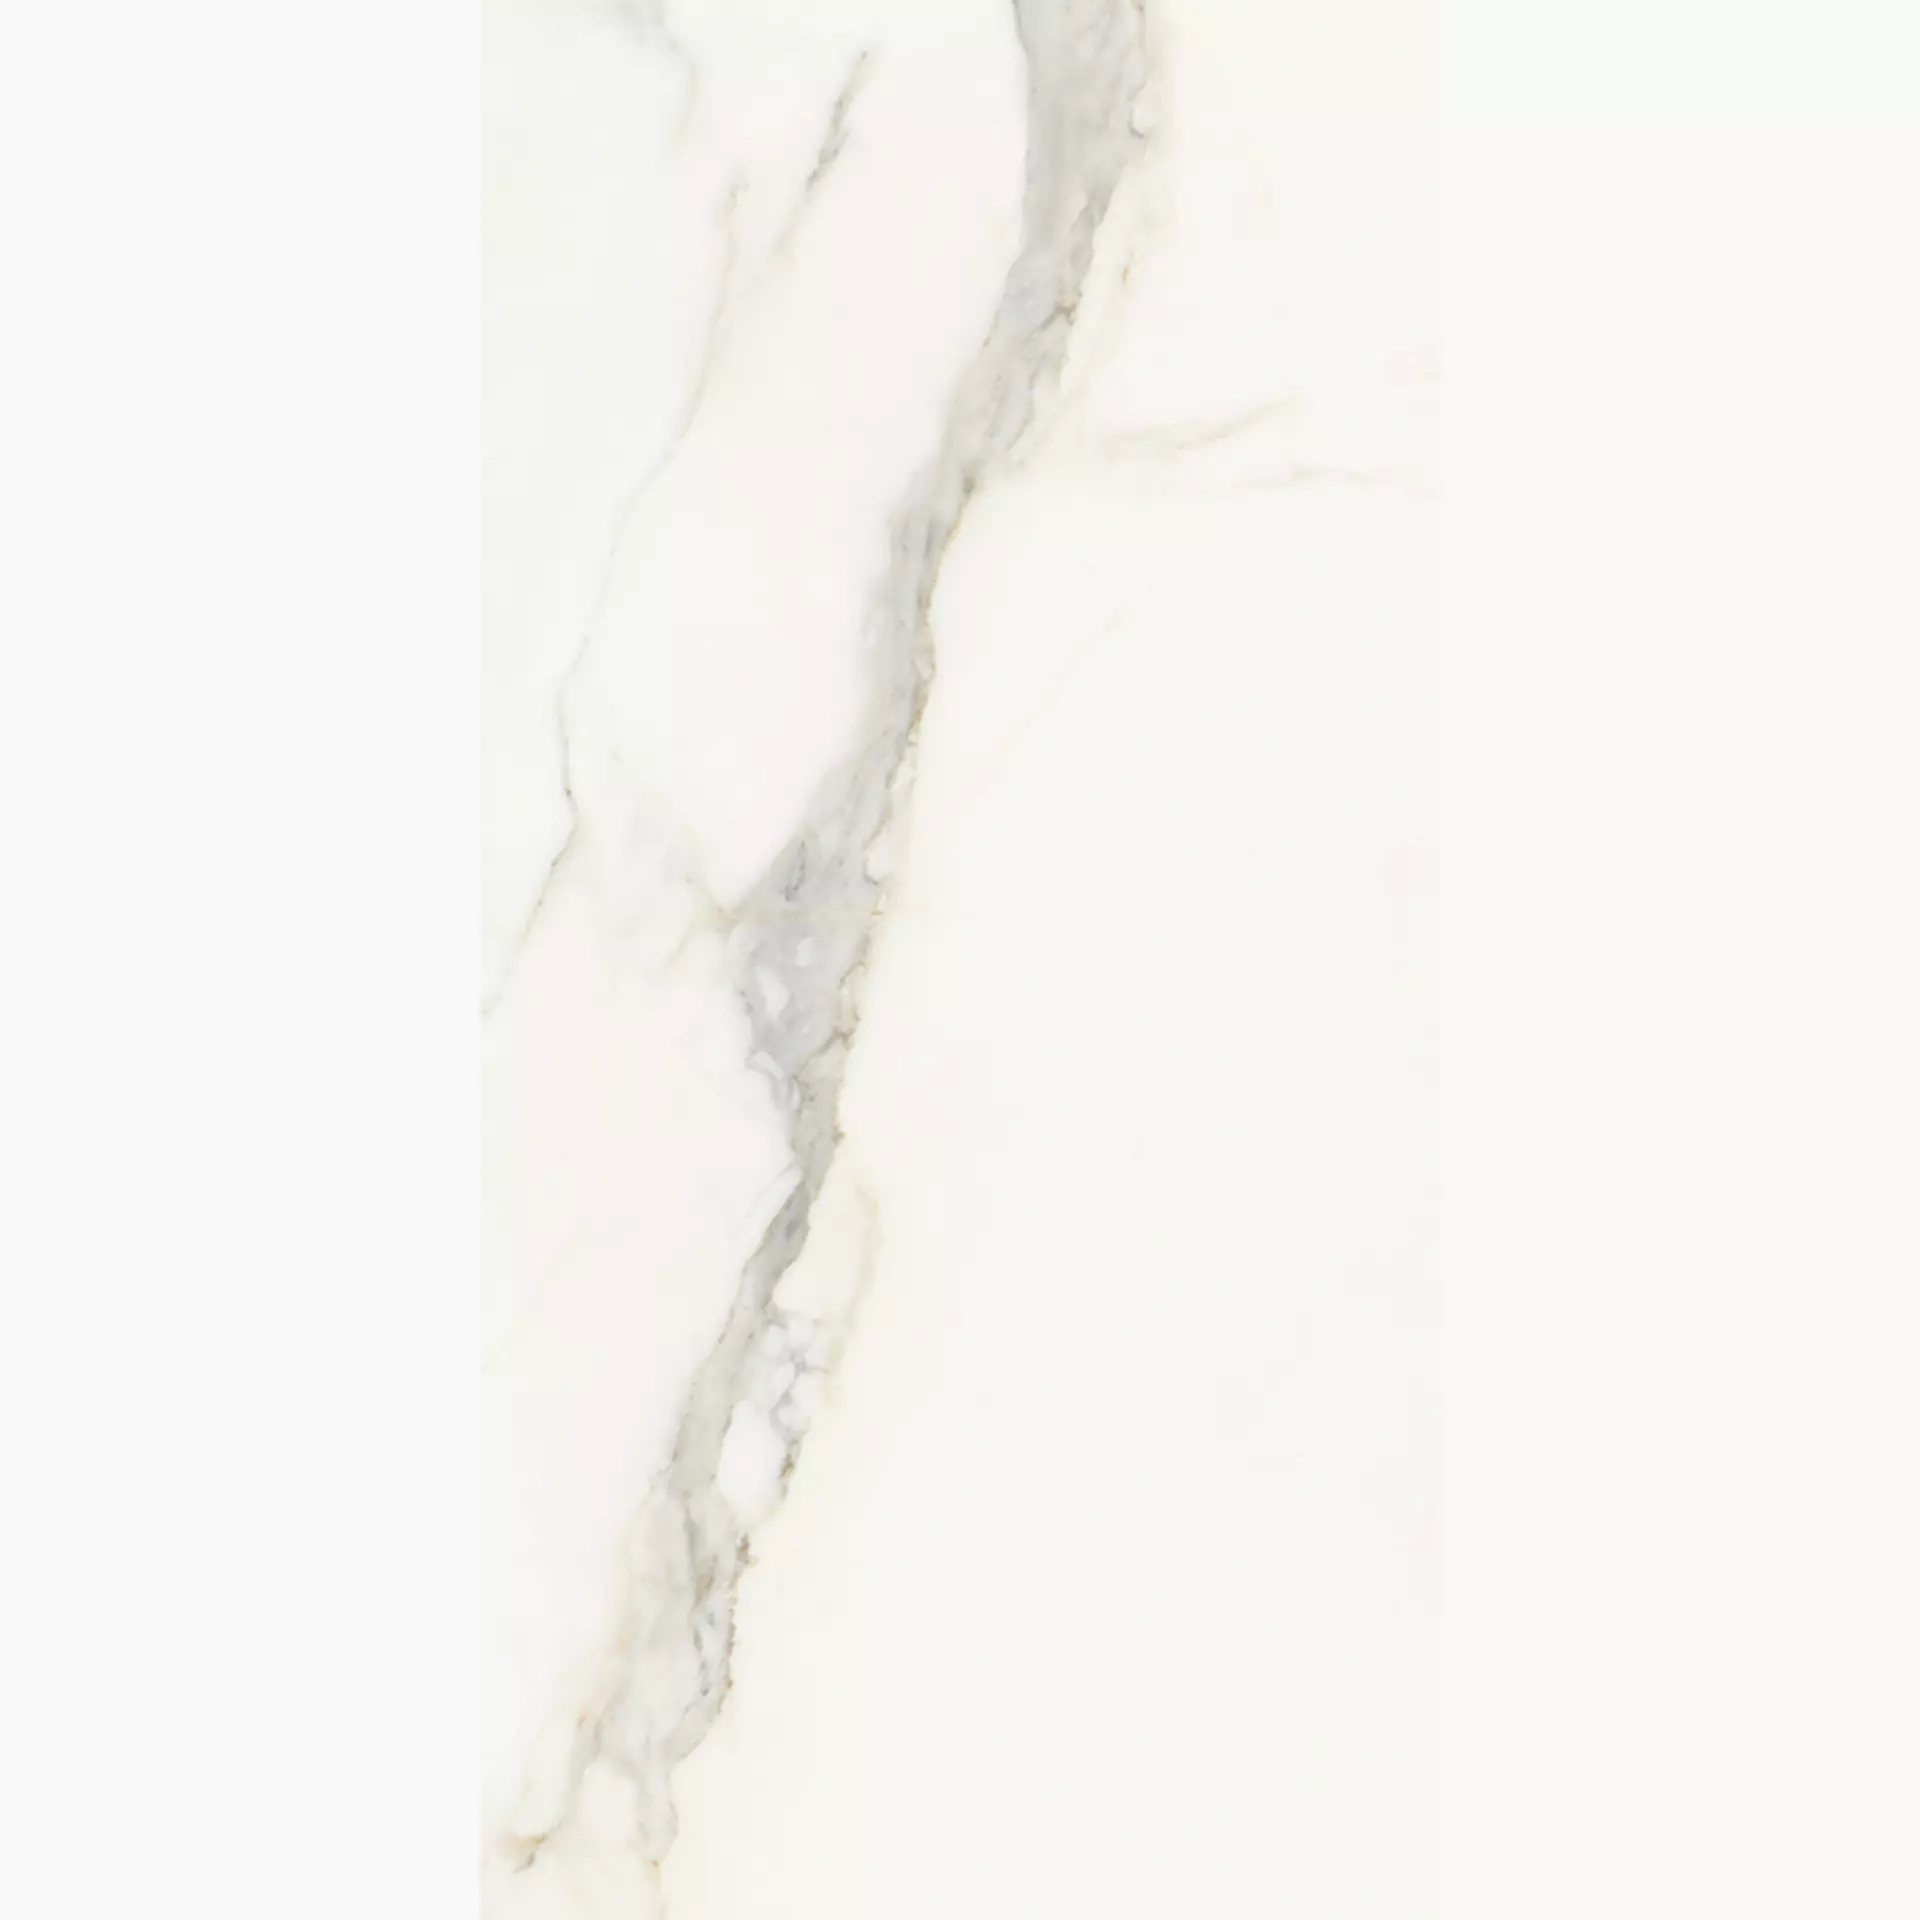 Wandfliese Villeroy & Boch Marmochic Essential White Glossy Essential White 1511-MR00 glaenzend 30x60cm rektifiziert 9mm